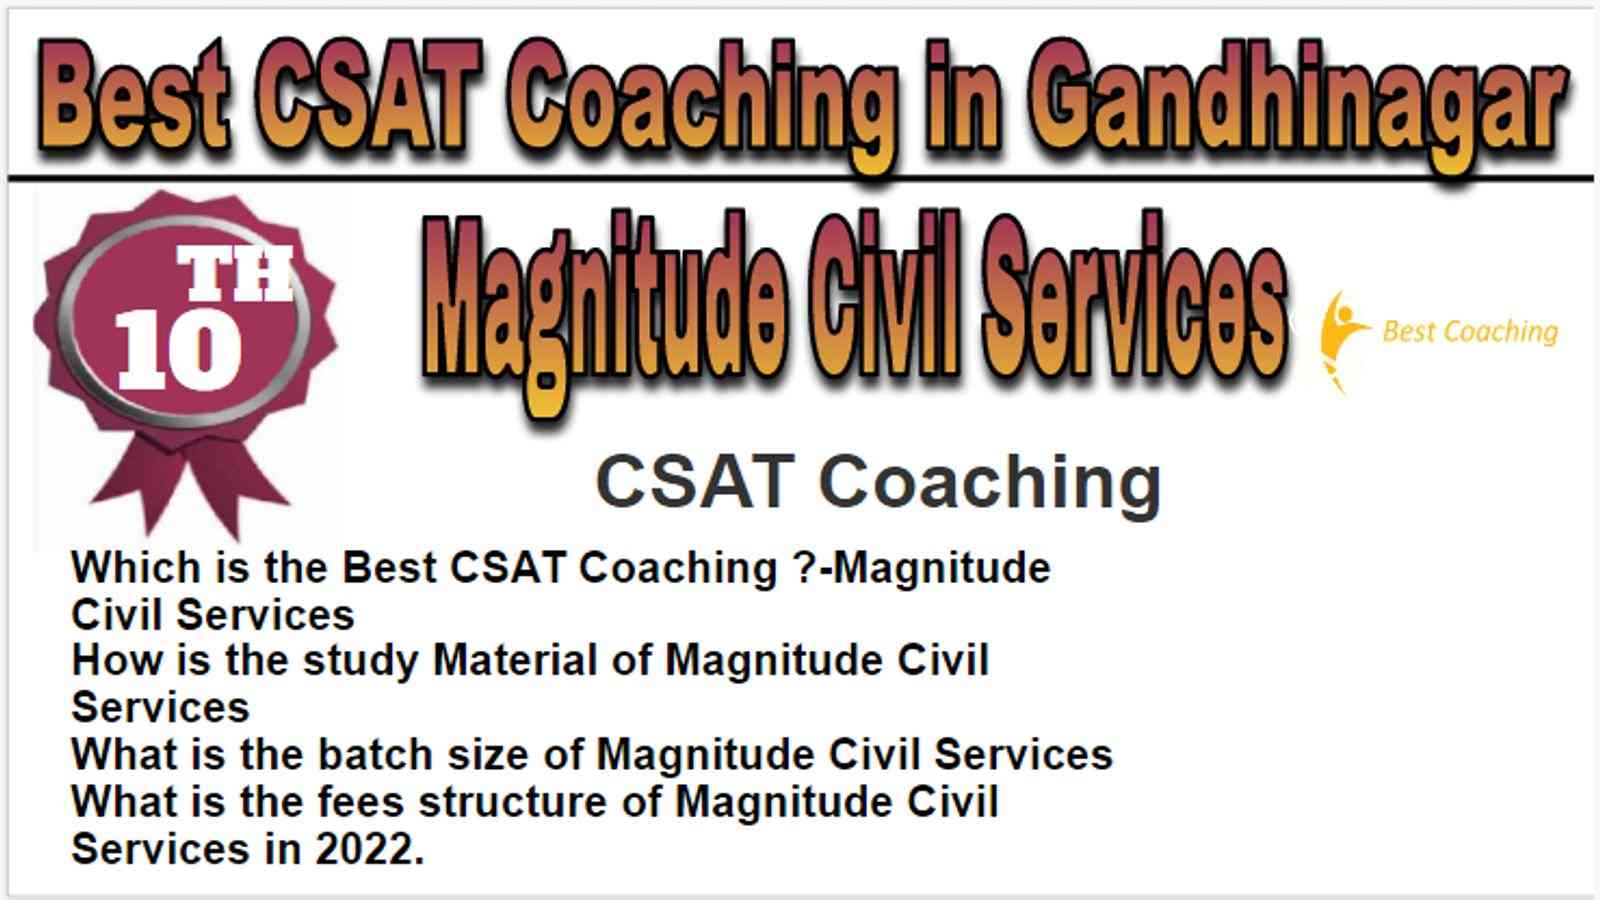 Rank 10 Best CSAT Coaching in Gandhinagar